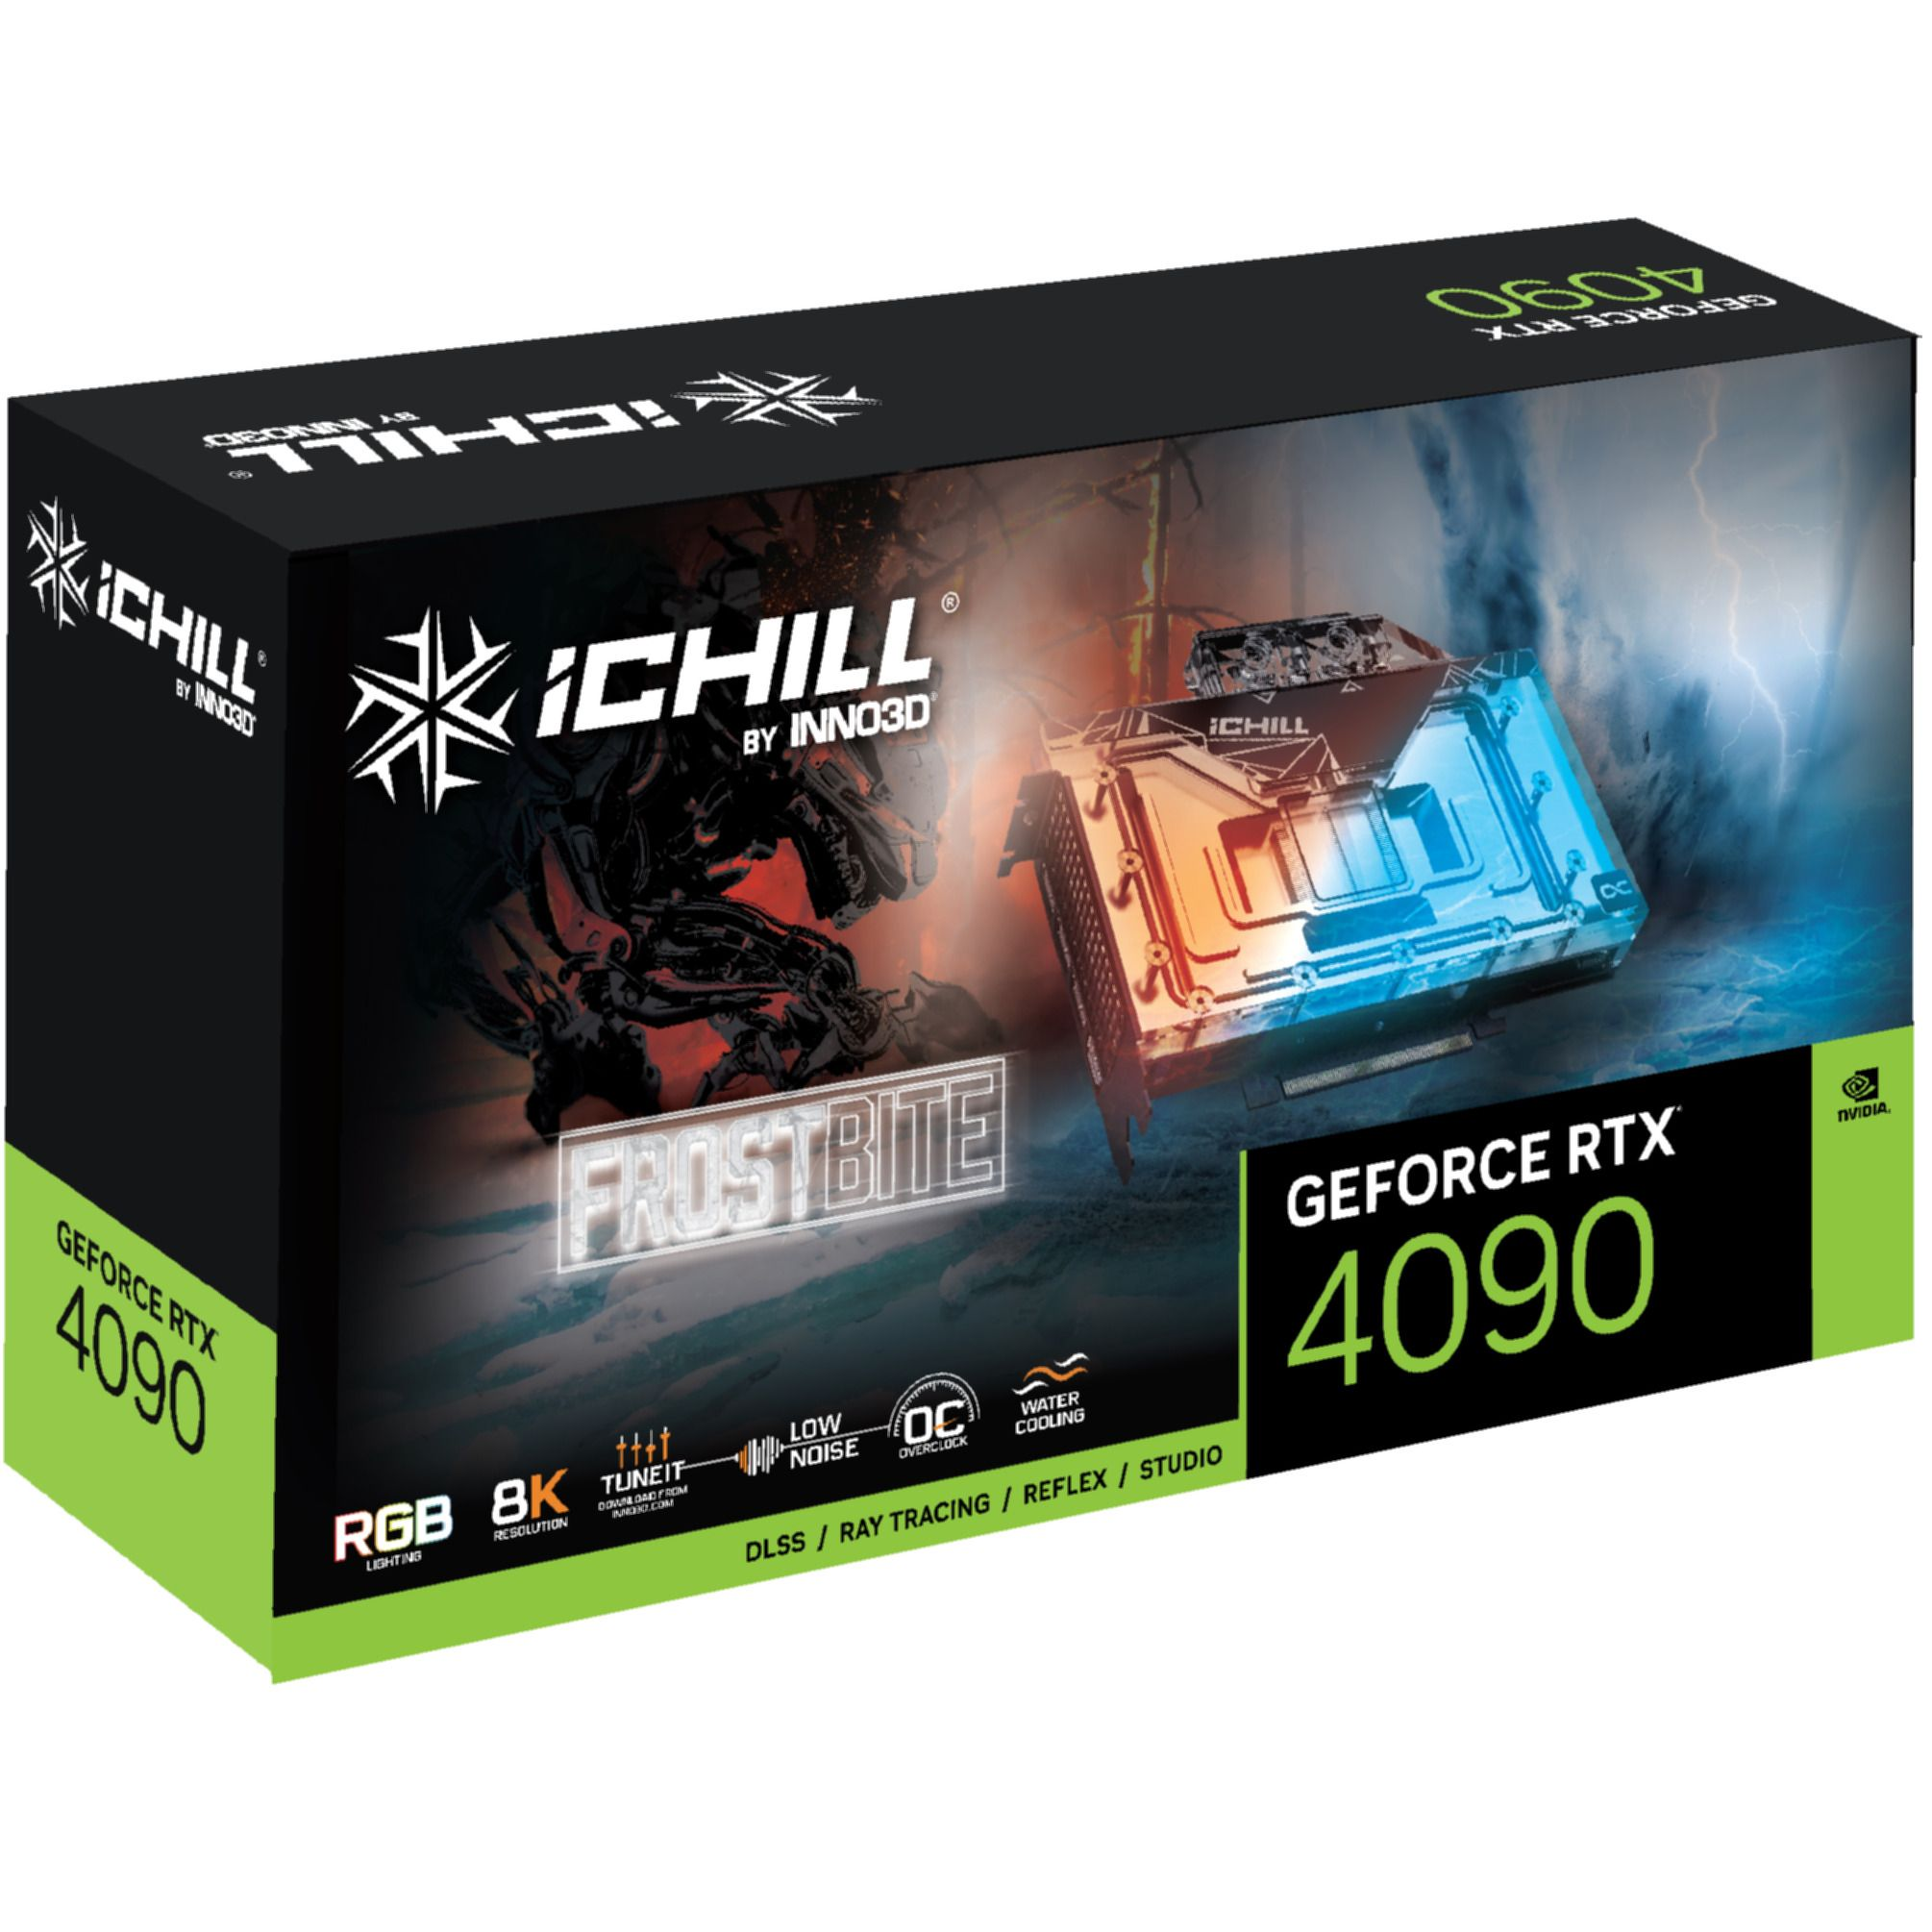 RTX GeForce ICHILL (NVIDIA, INNO3D FROSTBITE 4090 Grafikkarte)